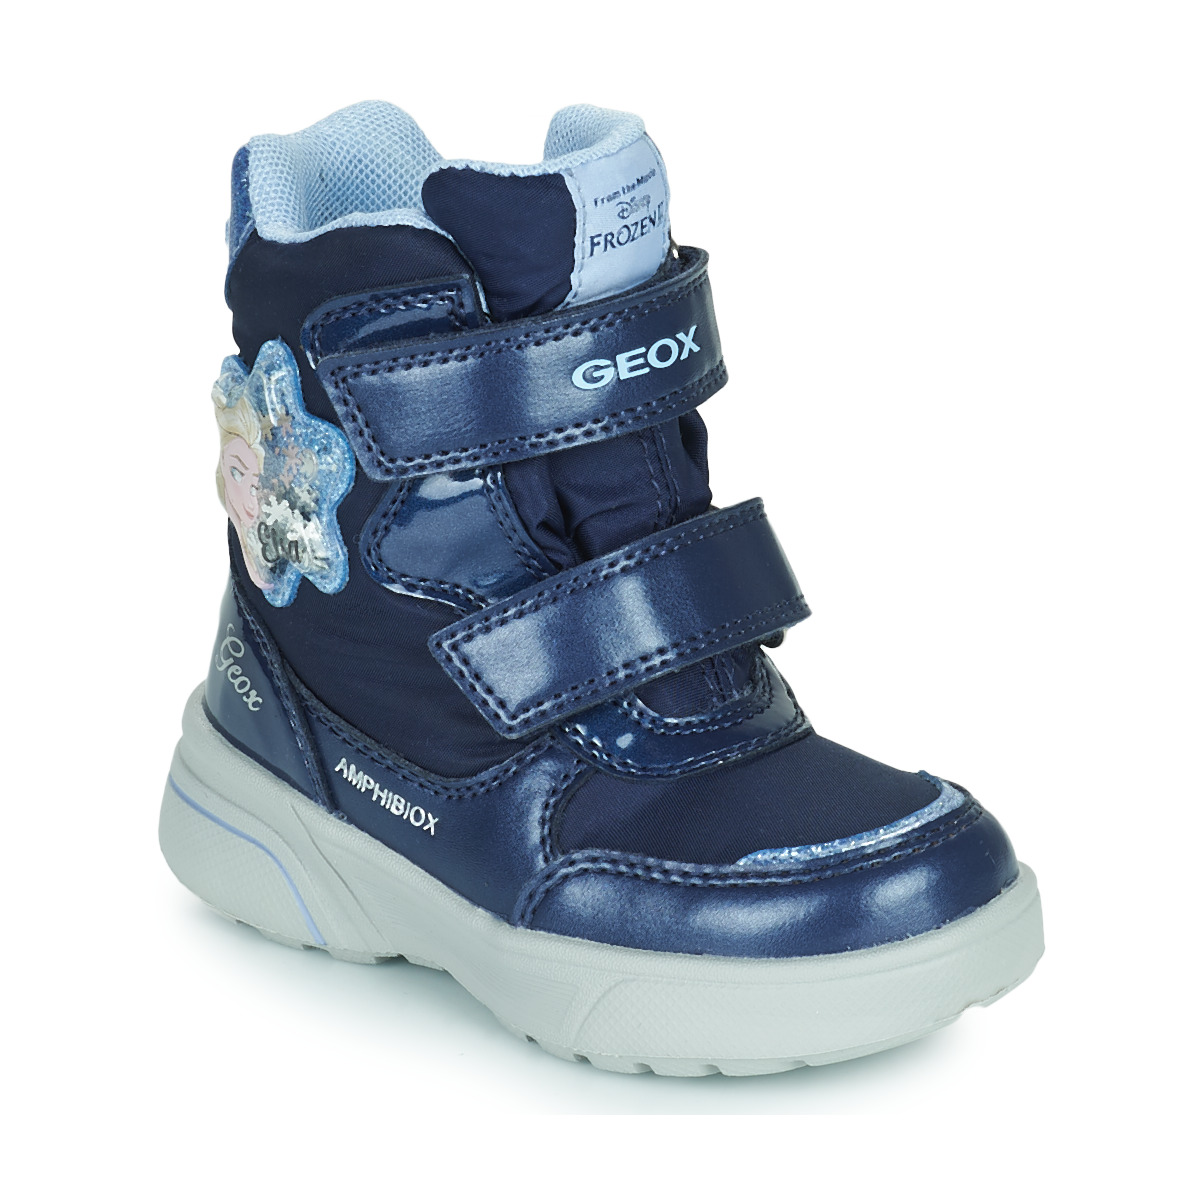 Schuhe Mädchen Schneestiefel Geox SVEGGEN ABX Marineblau